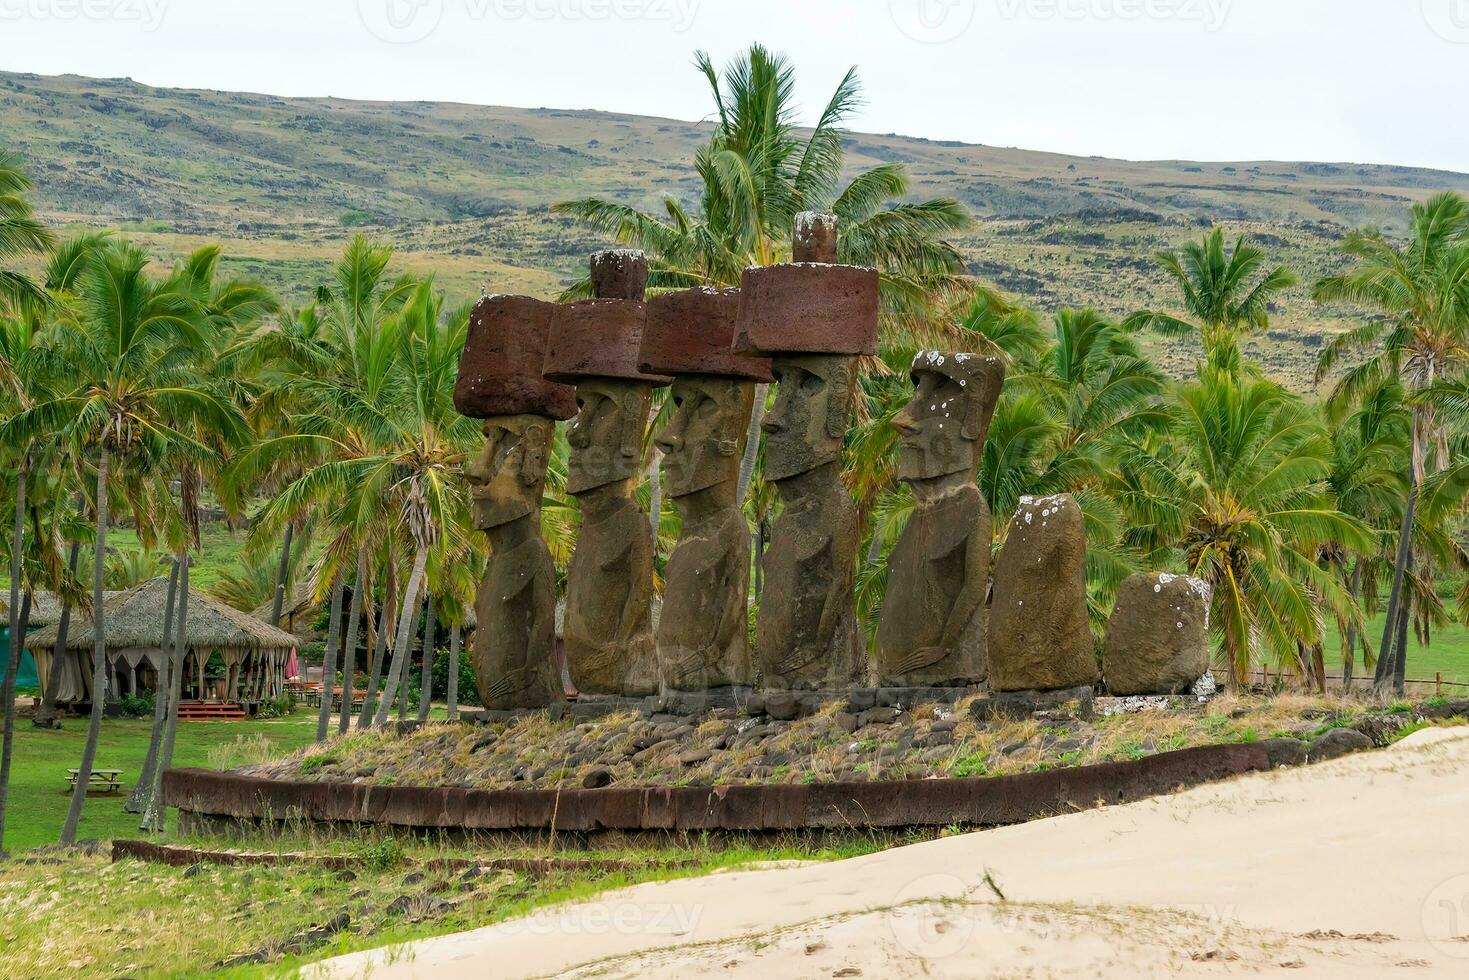 el antiguo moai en Pascua de Resurrección isla de Chile foto